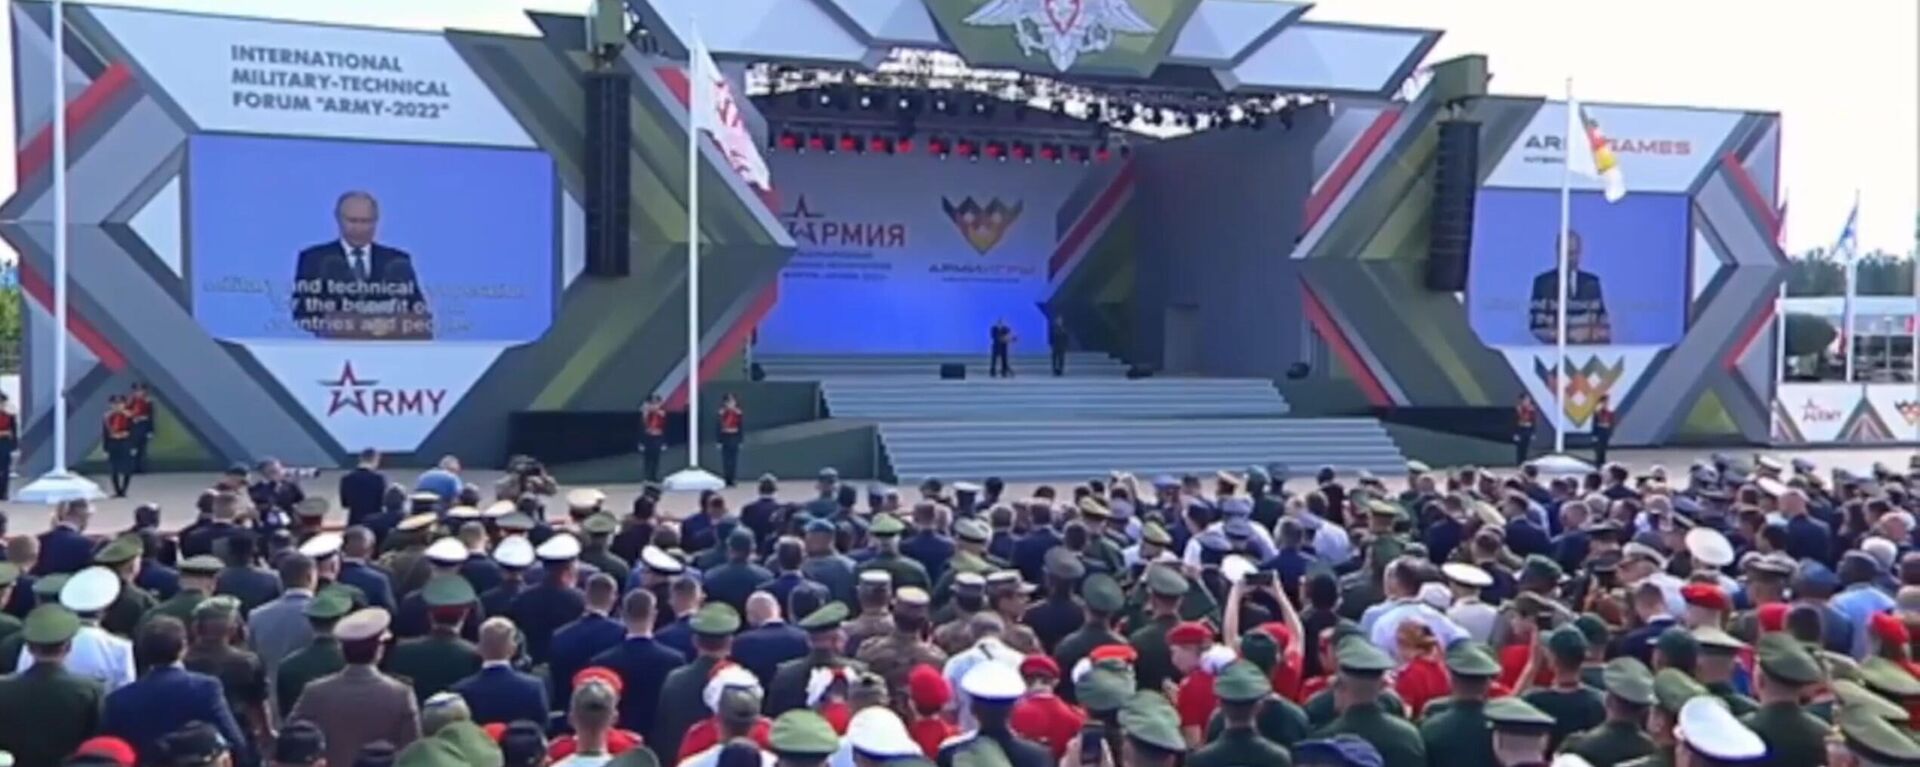 Торжественная церемония открытия МВТФ АРМИЯ-2022 и АрМИ-2022 - Sputnik Абхазия, 1920, 15.08.2022